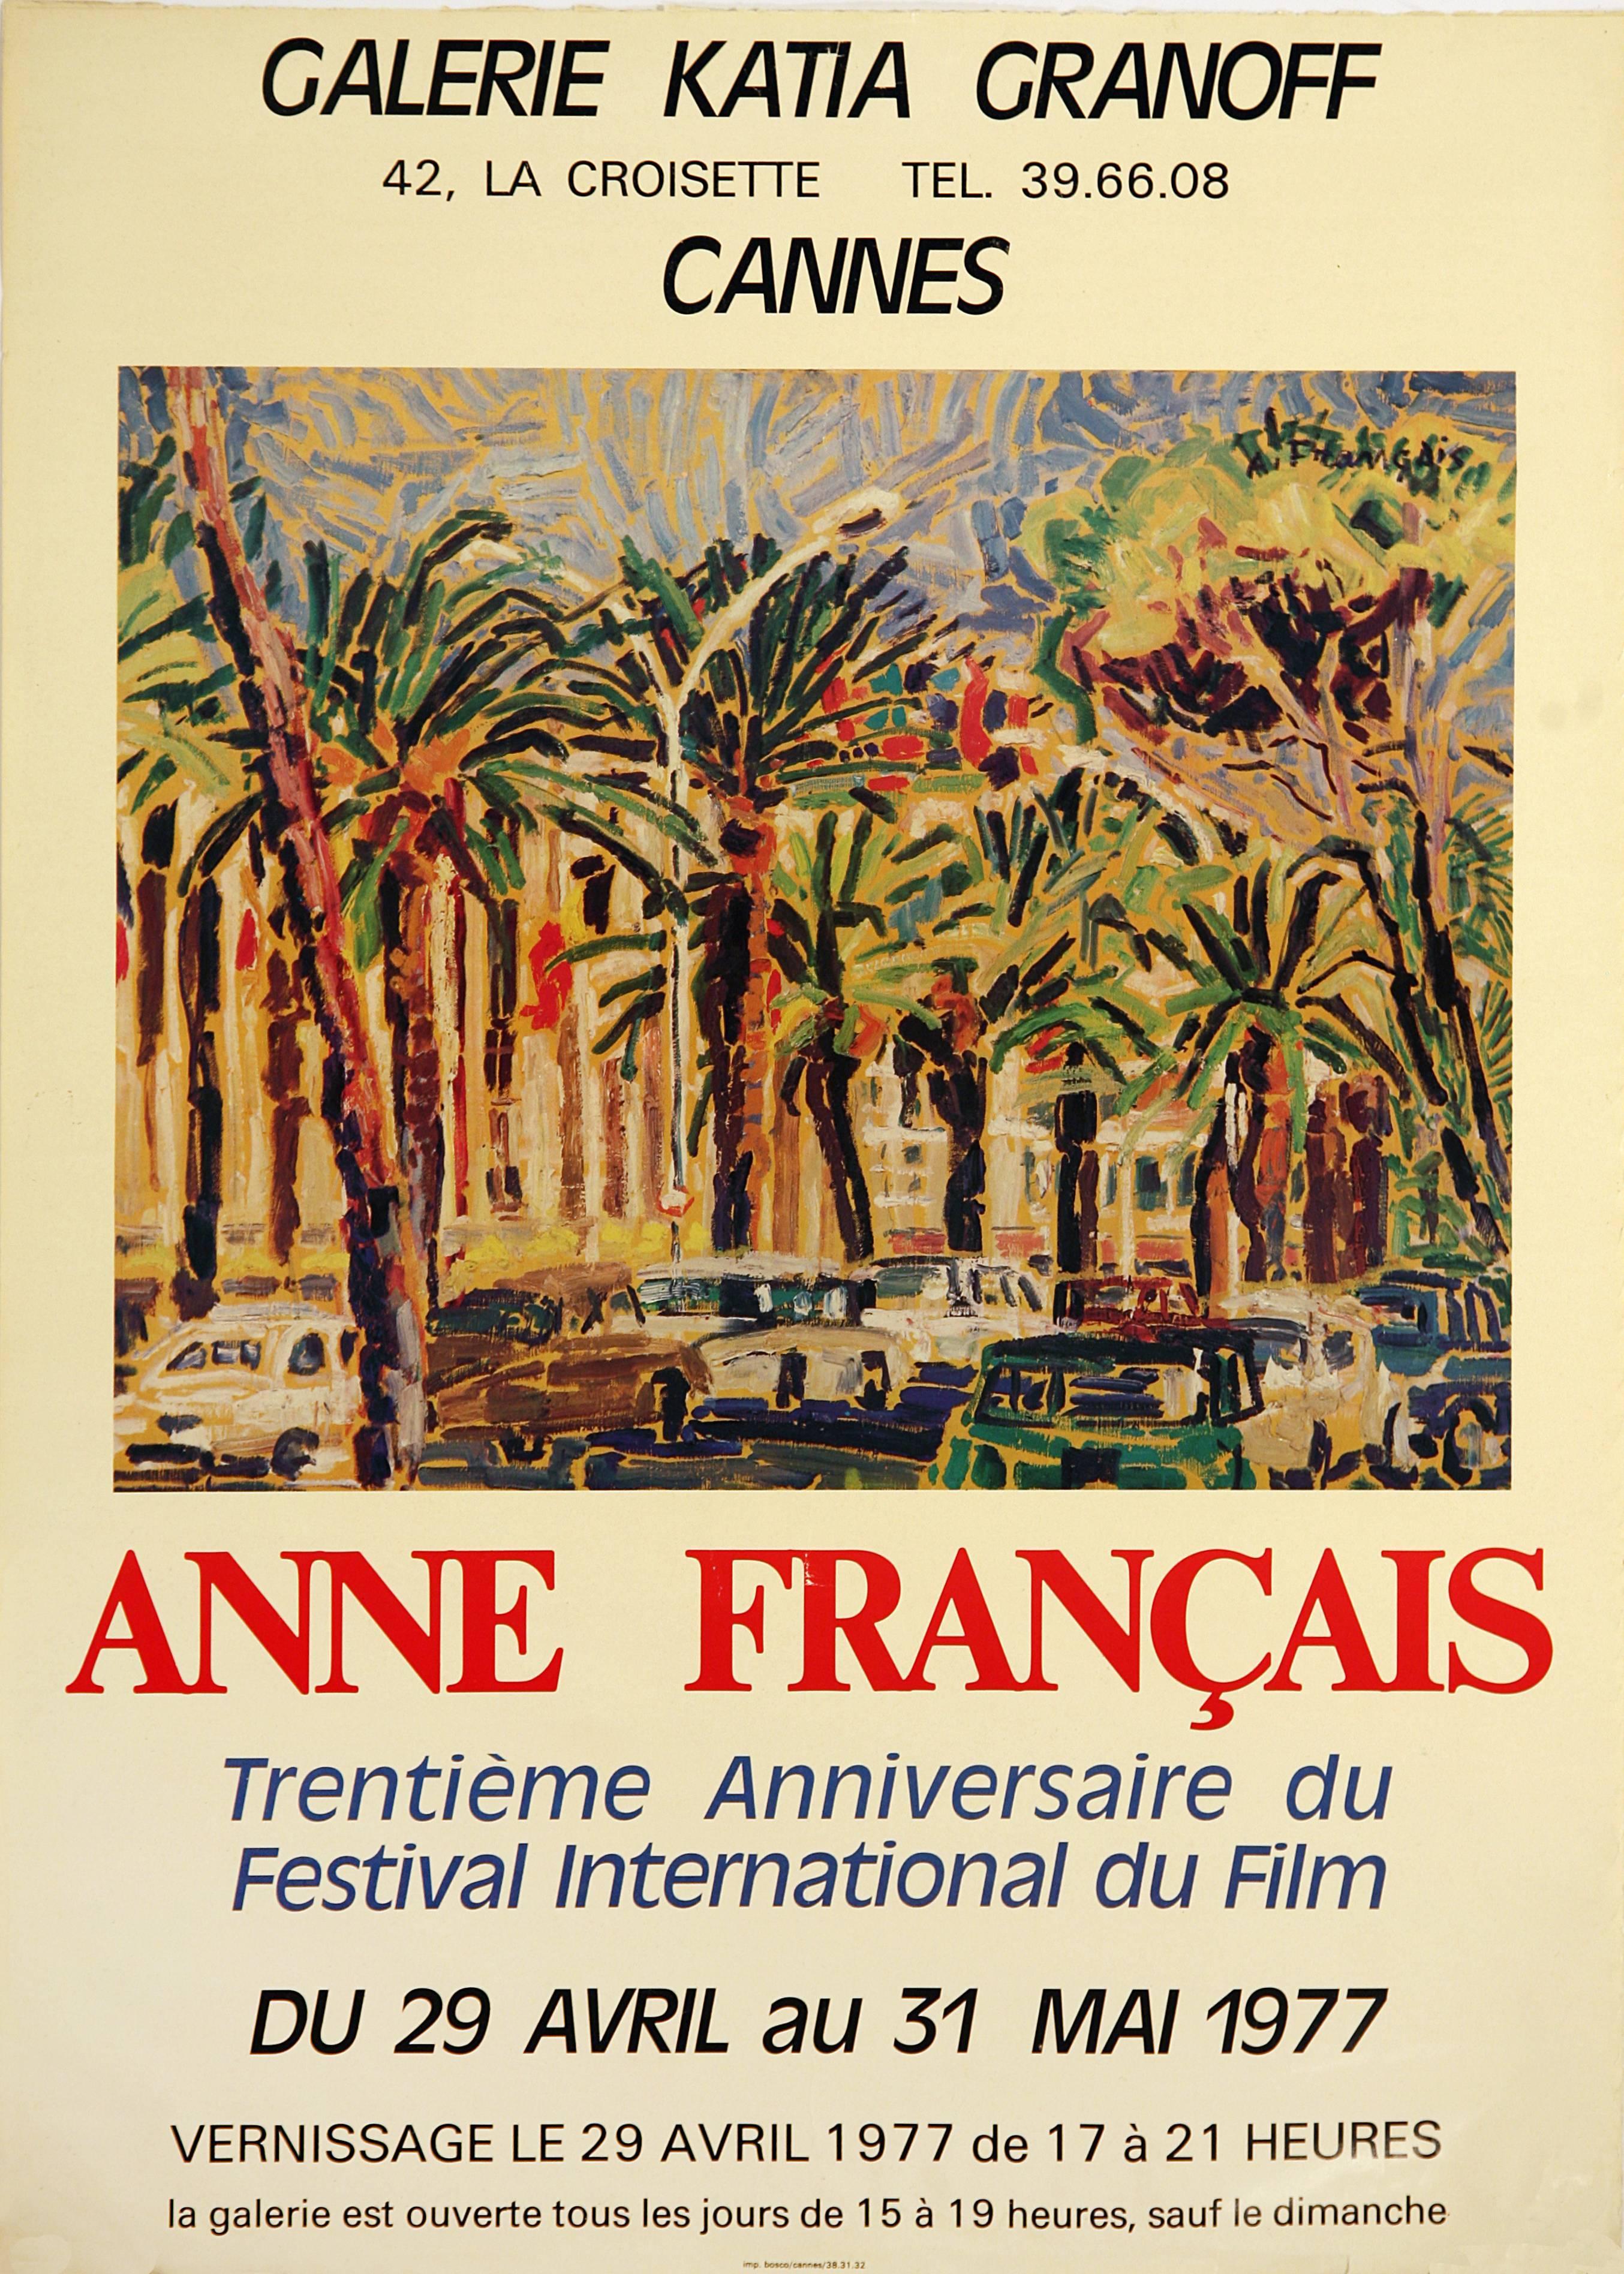 Anne Francais Landscape Print - Cannes Gallery Exhibit Poster